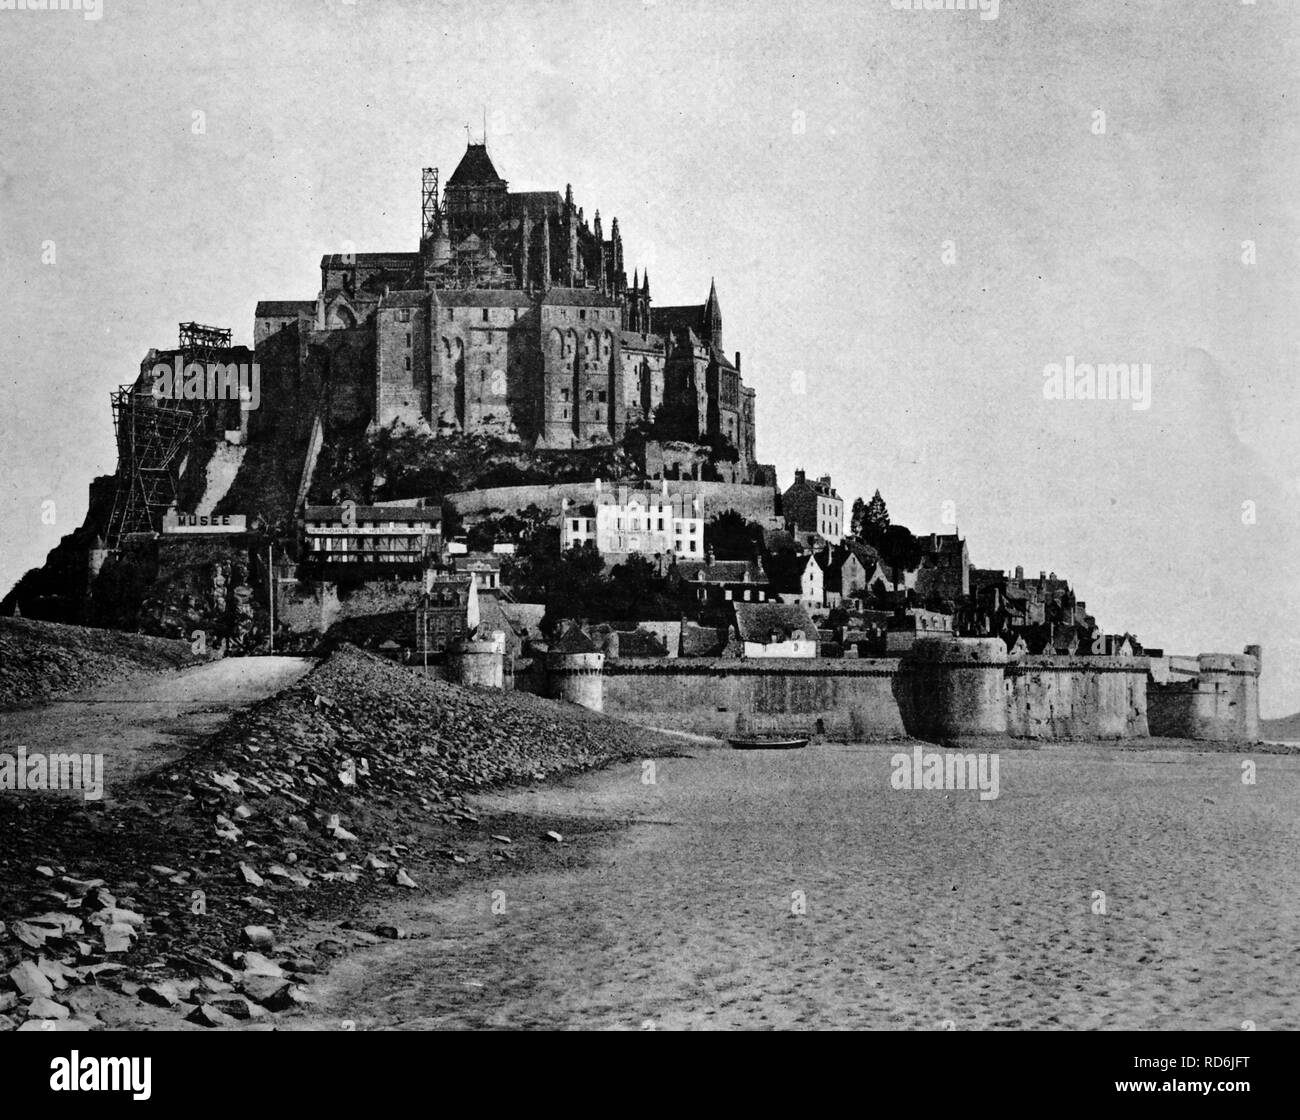 Début d'Autotype Mont Saint-Michel, Normandie, UNESCO World Heritage Site, France, photo historique, 1884 Banque D'Images